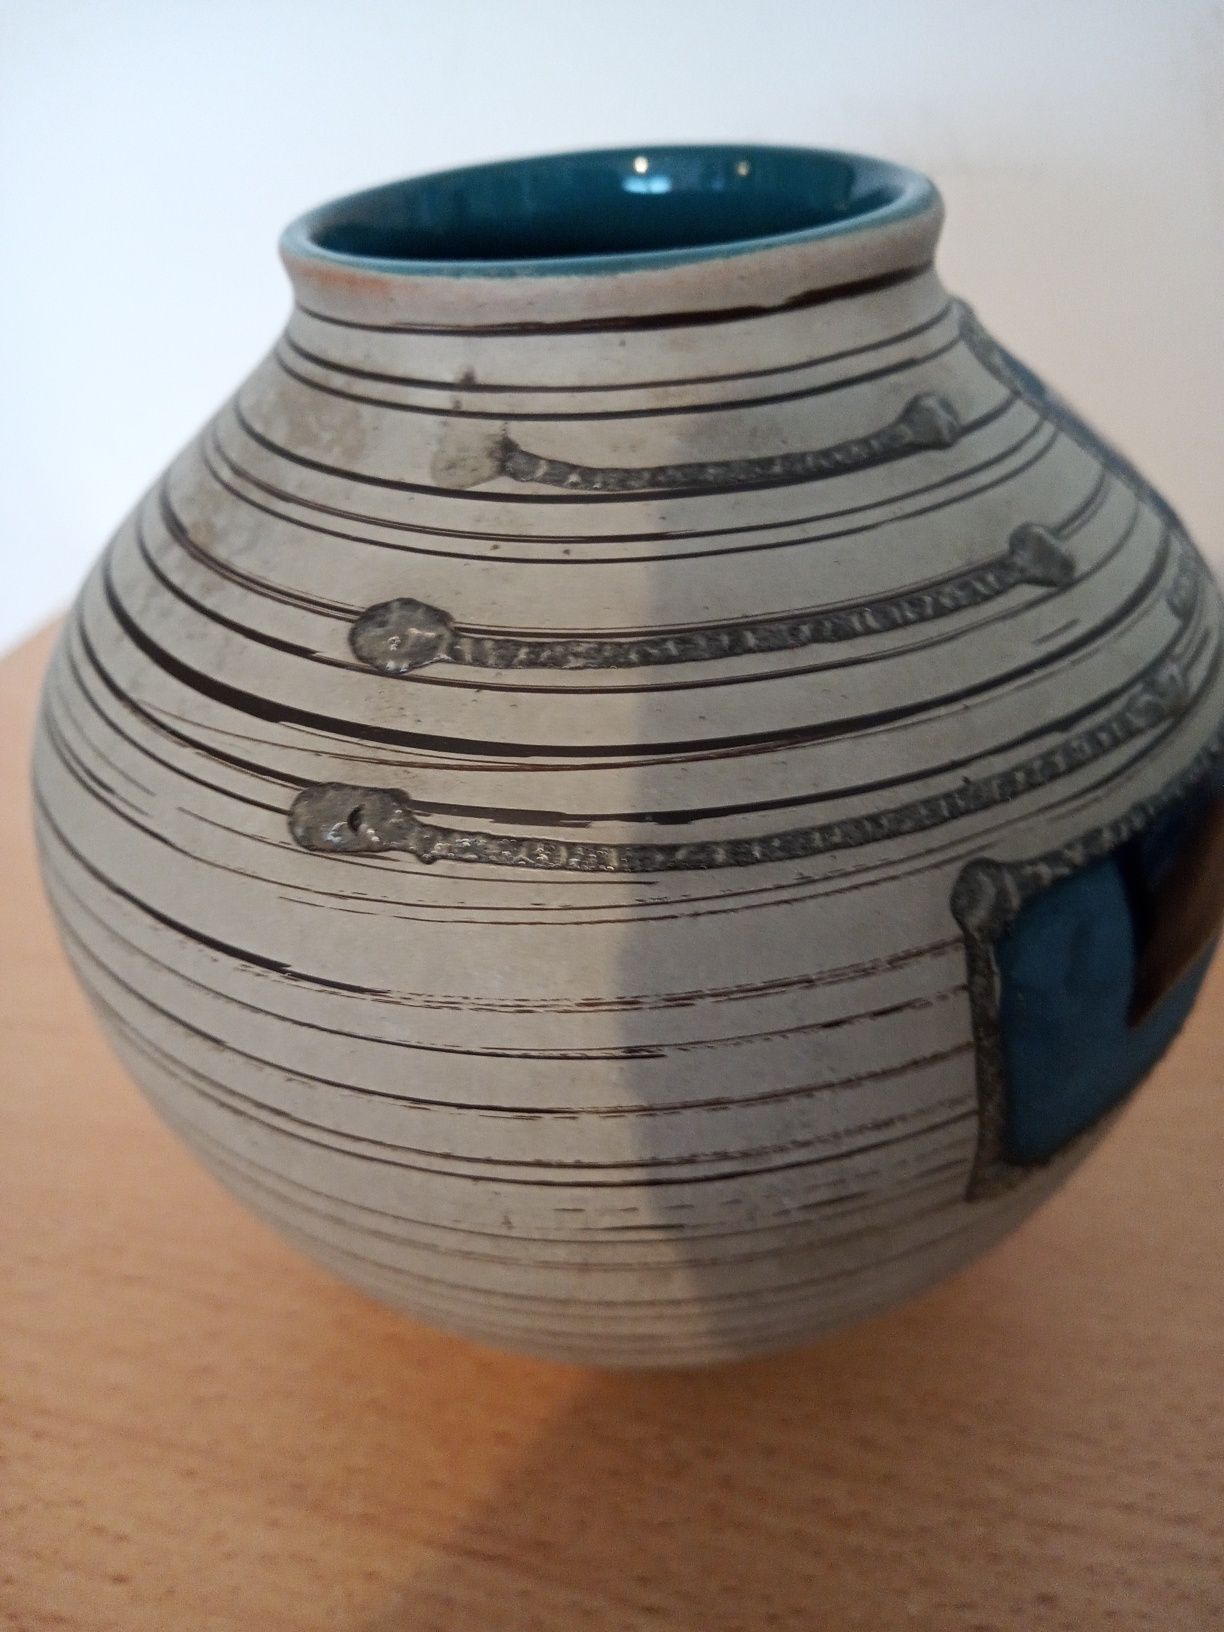 Wazon ceramiczny Carstens.